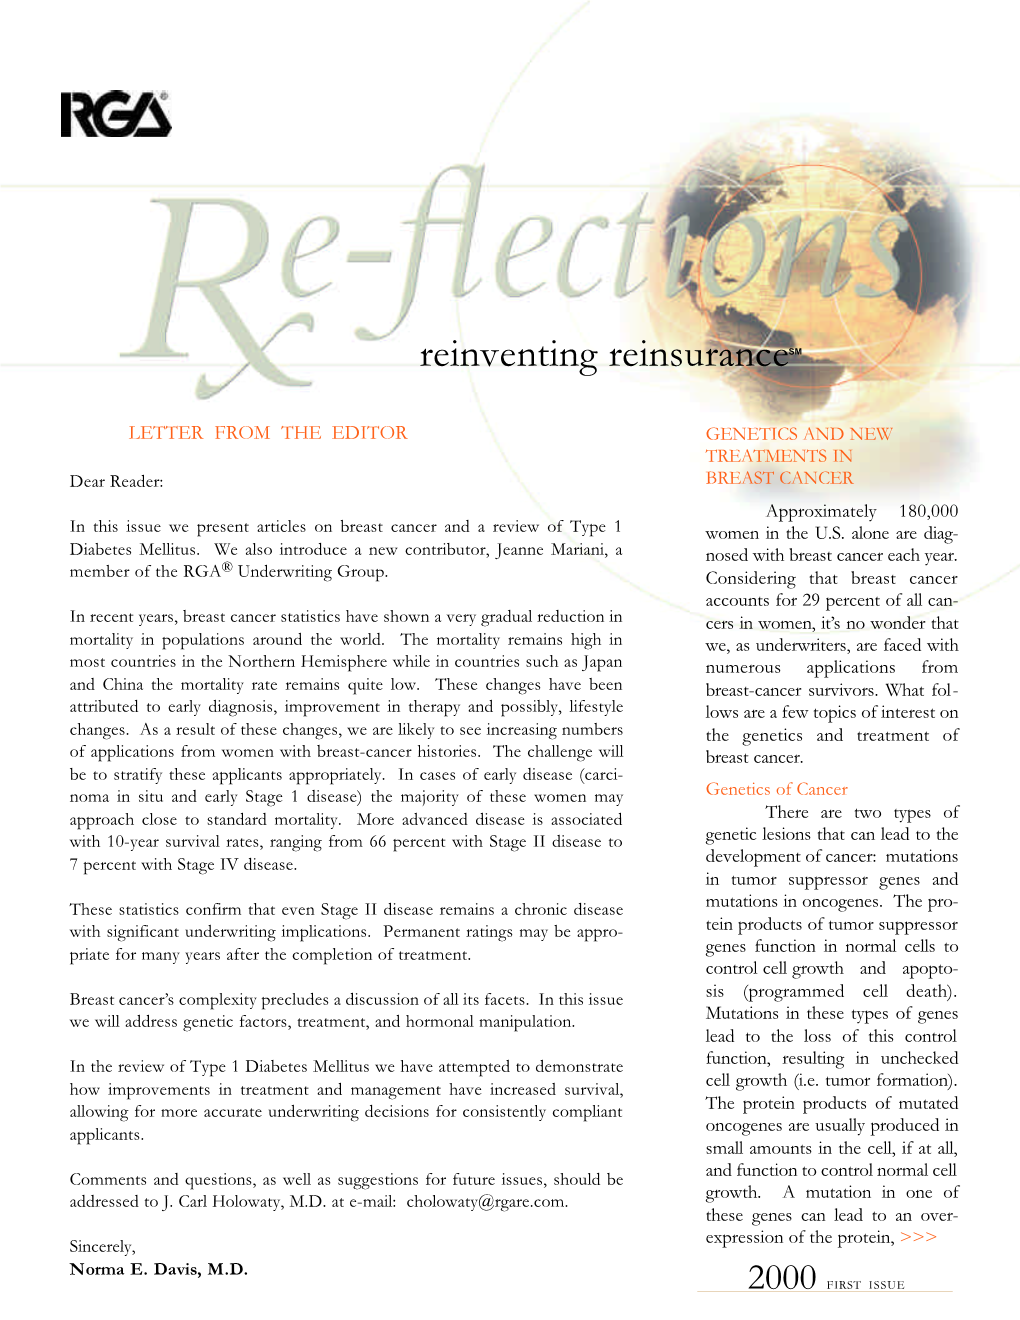 Re-Flections Medical Newsletter June, 2000